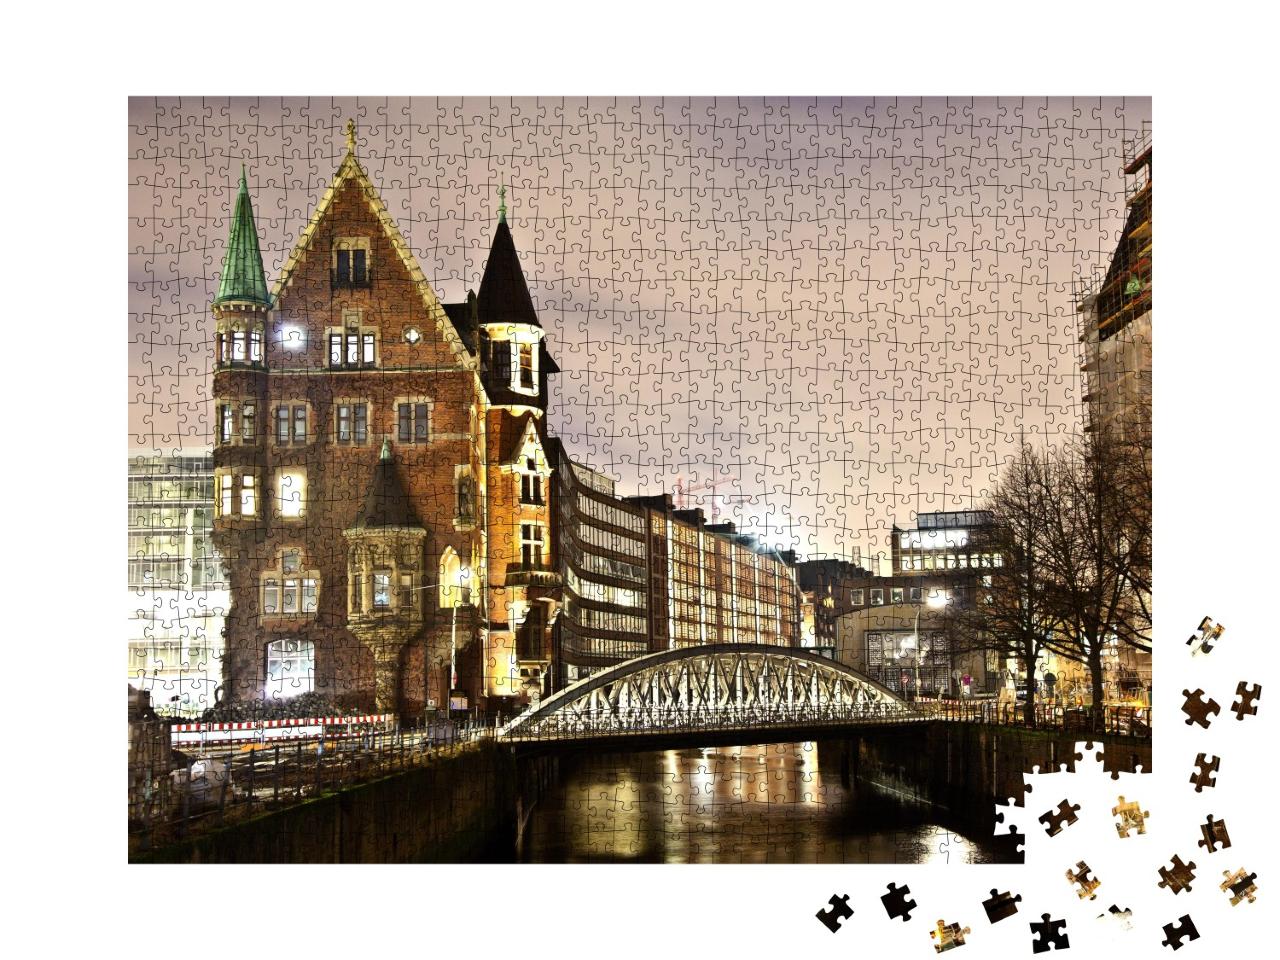 Puzzle de 1000 pièces « Speicherstadt historique de nuit, Hambourg »